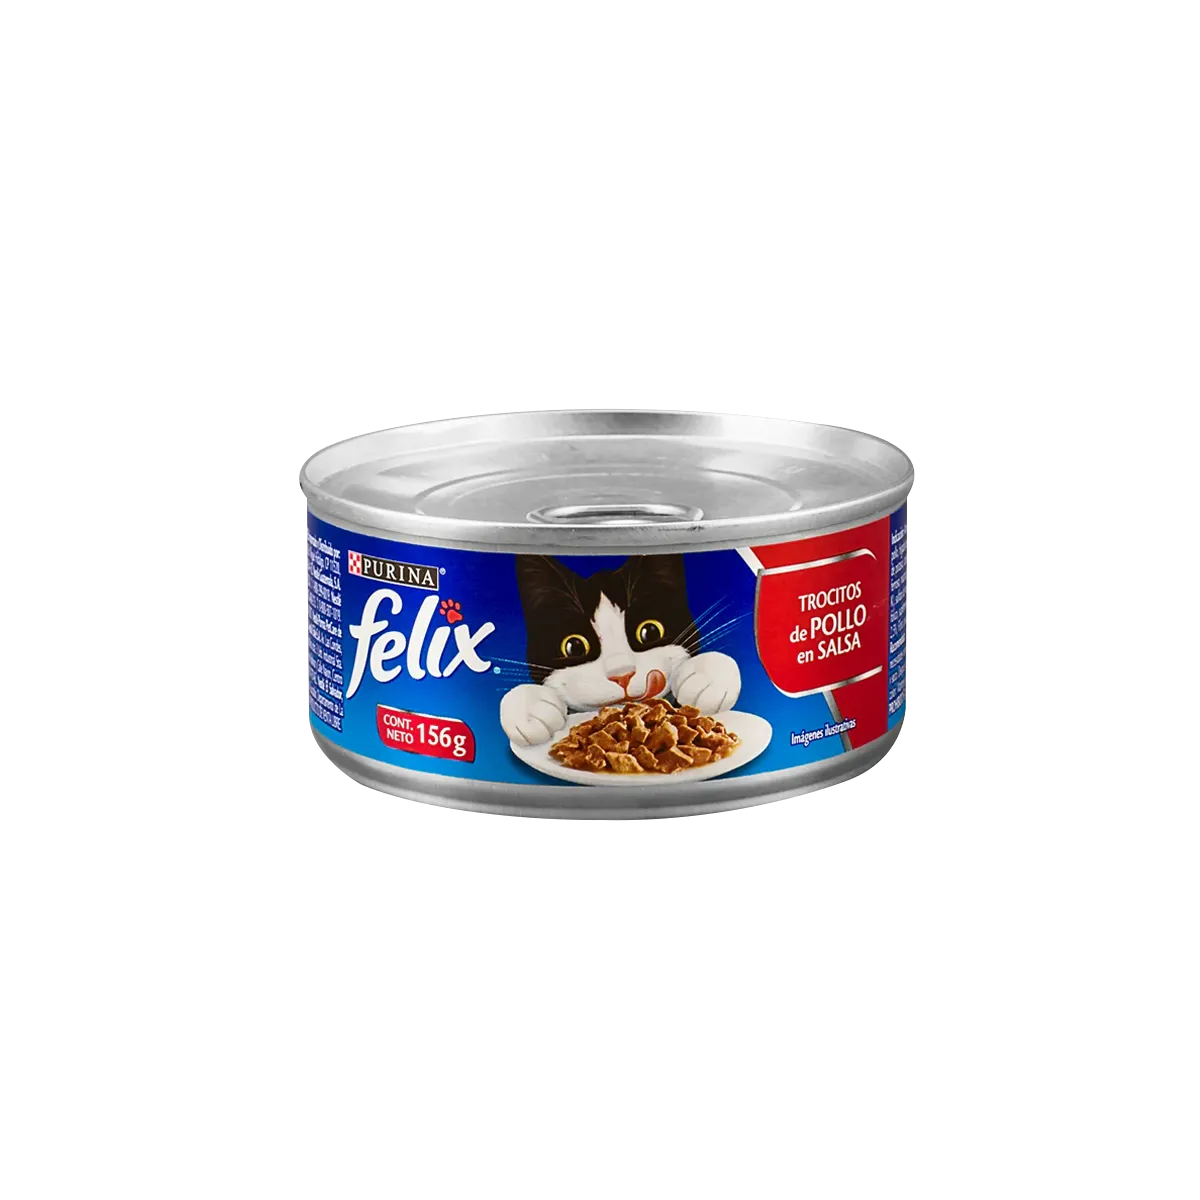 Purina-Felix-trocitos-de-pollo-en-salsa